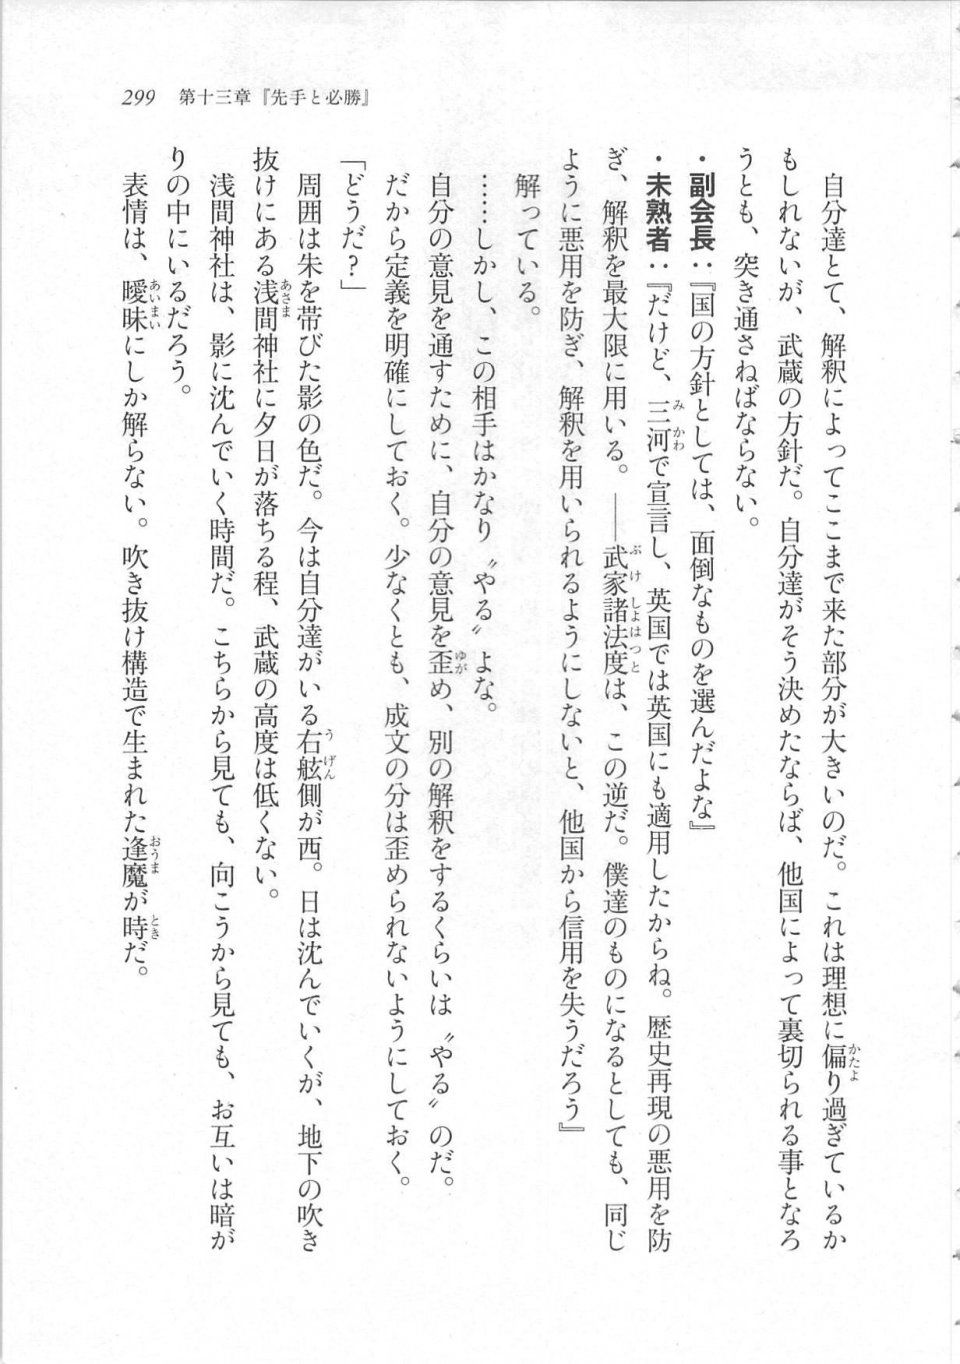 Kyoukai Senjou no Horizon LN Sidestory Vol 3 - Photo #303